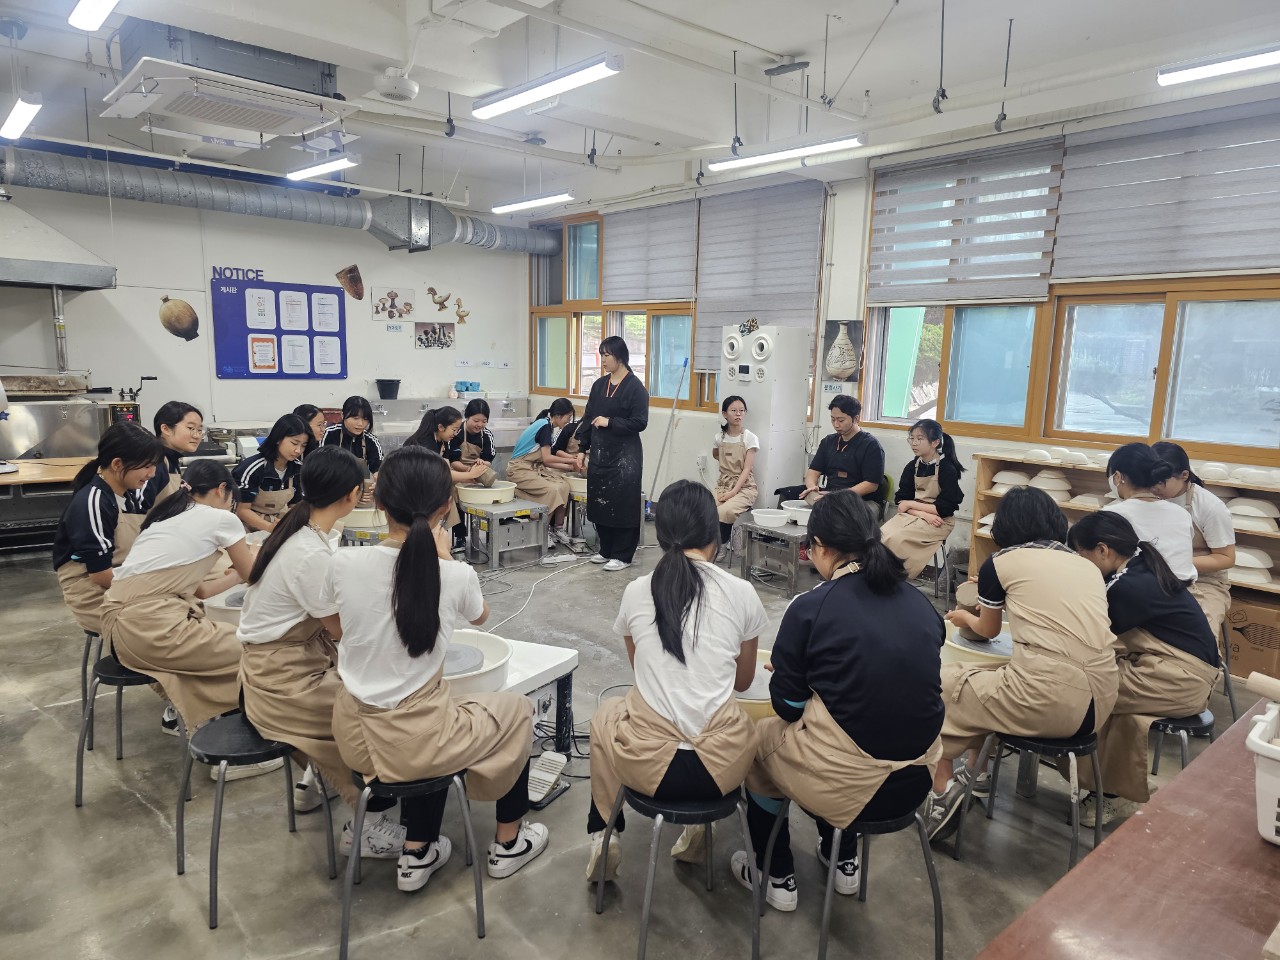 
															
															
																
																	함안여자중학교, 예술교육원 해봄에서 함께한 자유학기제 체험 활동 [1번째 이미지]
																
																
															
														